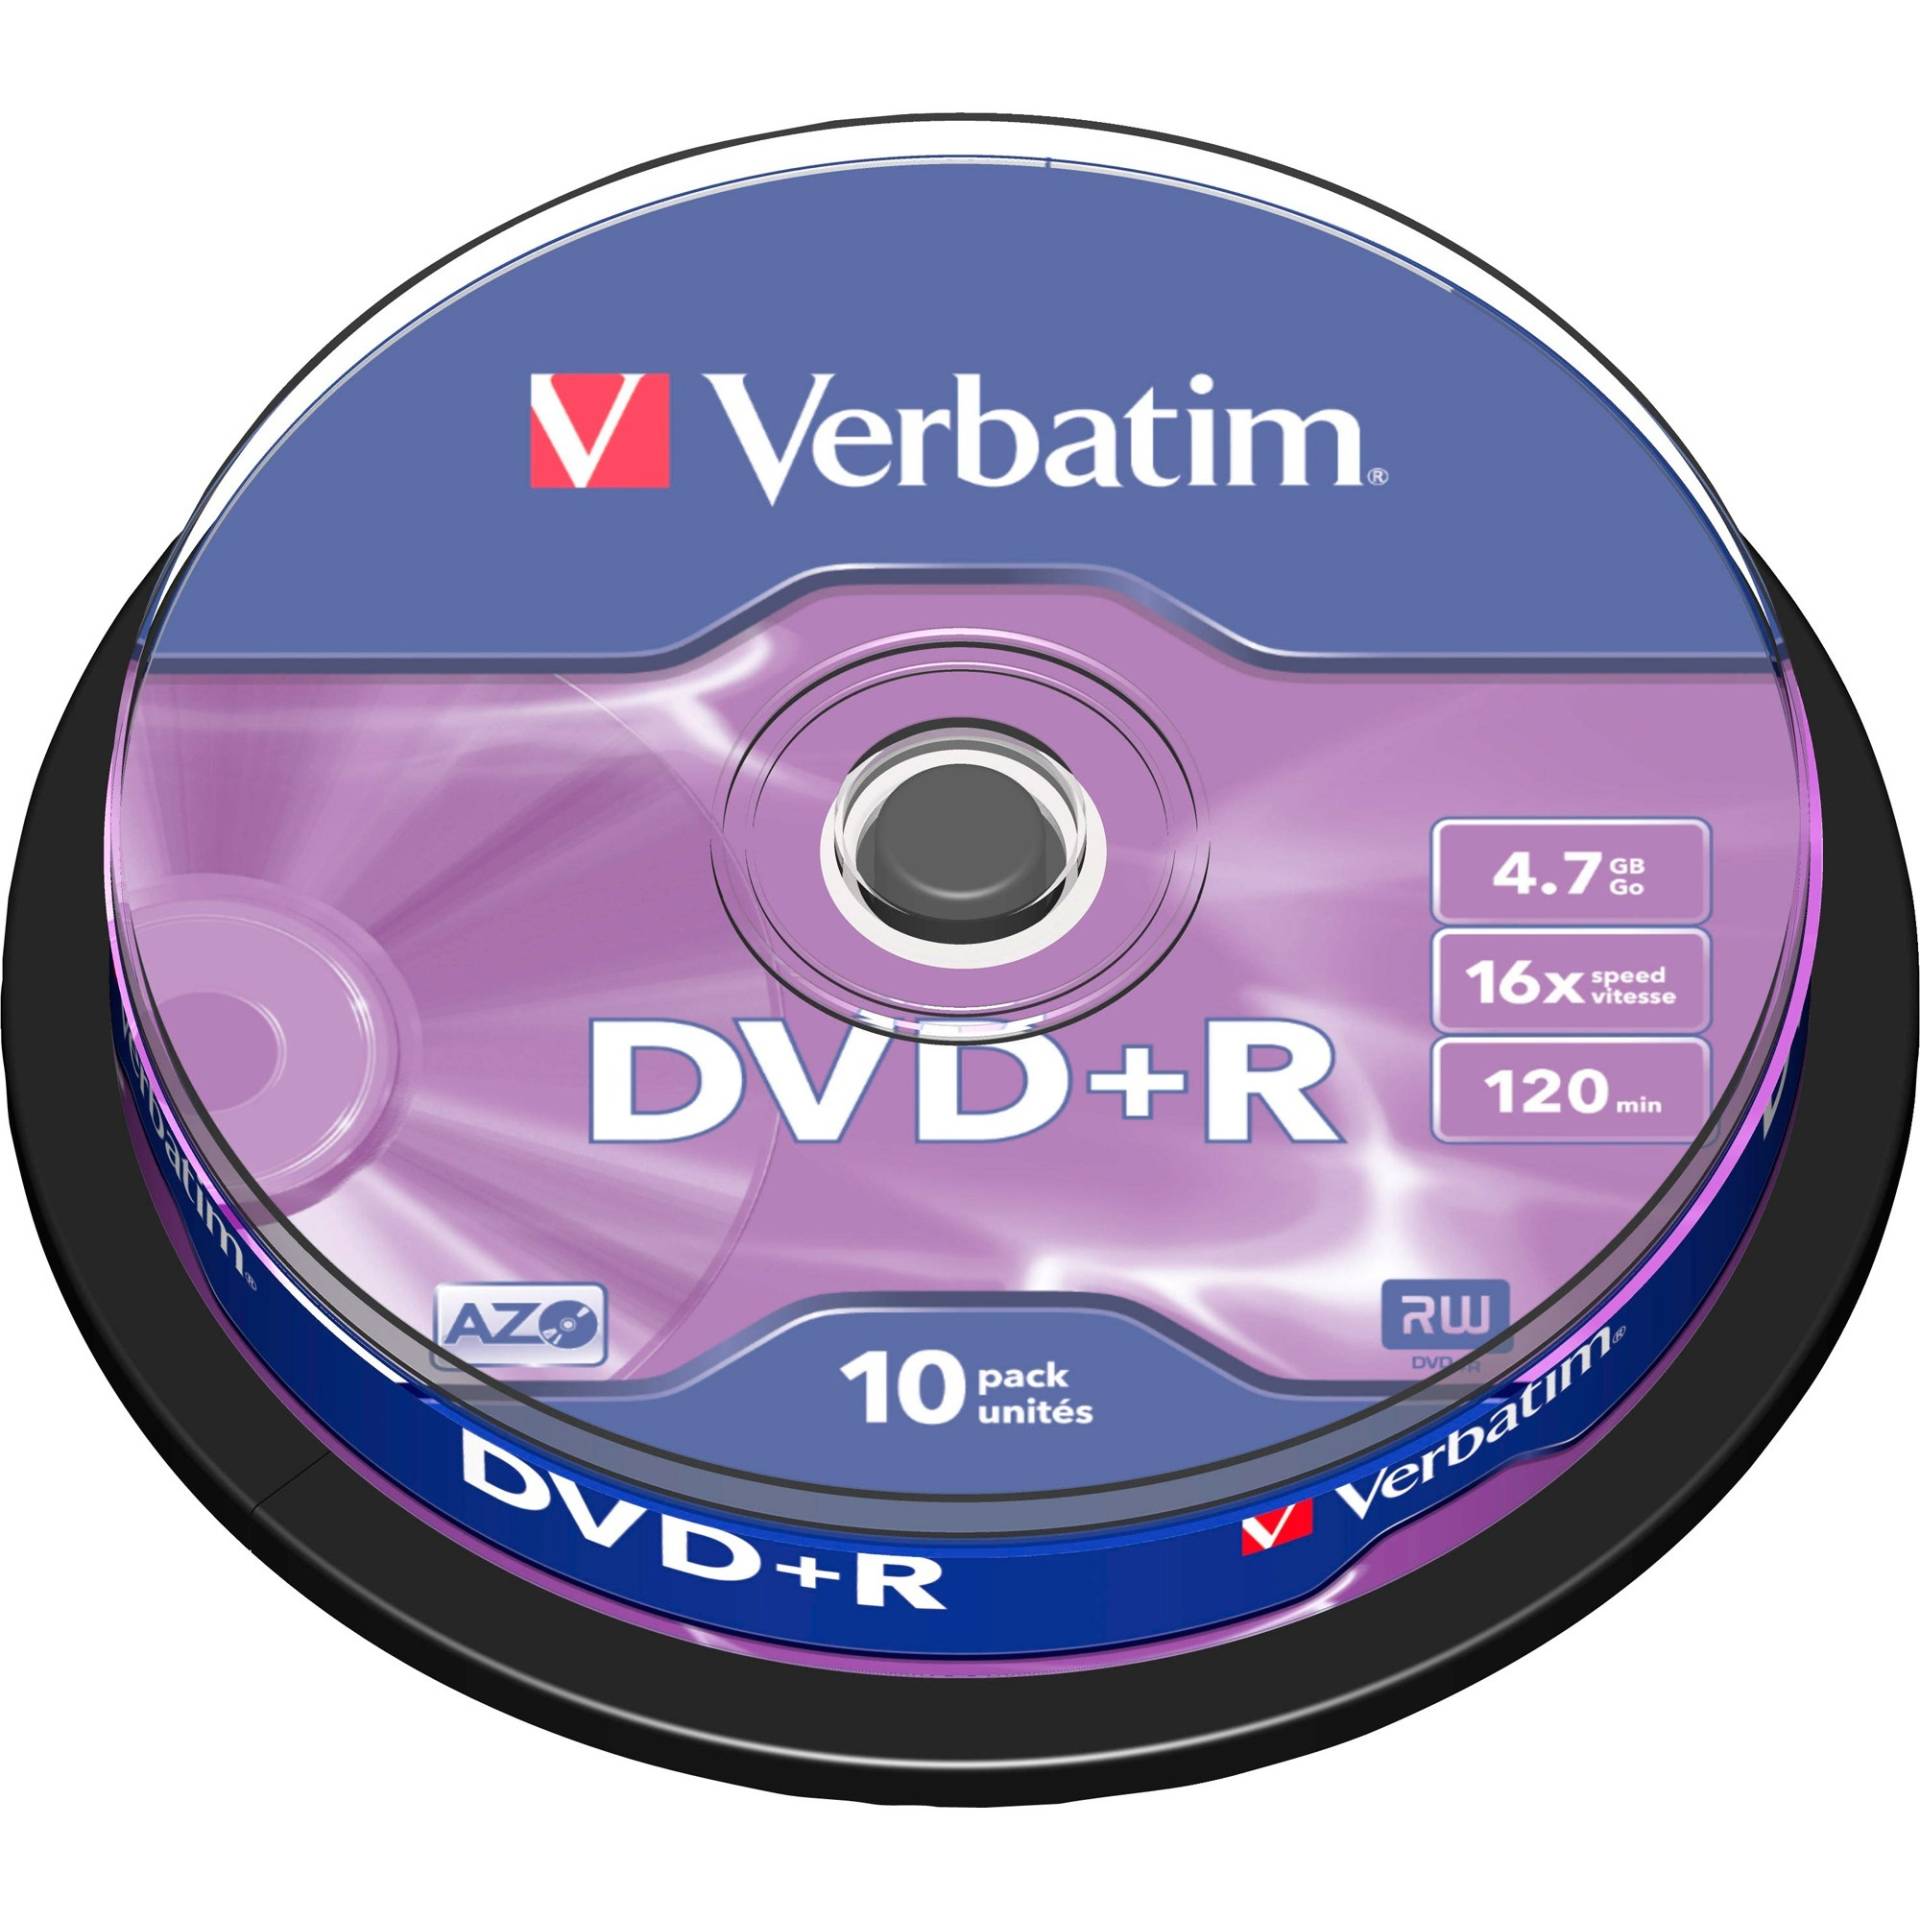 DVD+R 4,7 GB, DVD-Rohlinge von Verbatim